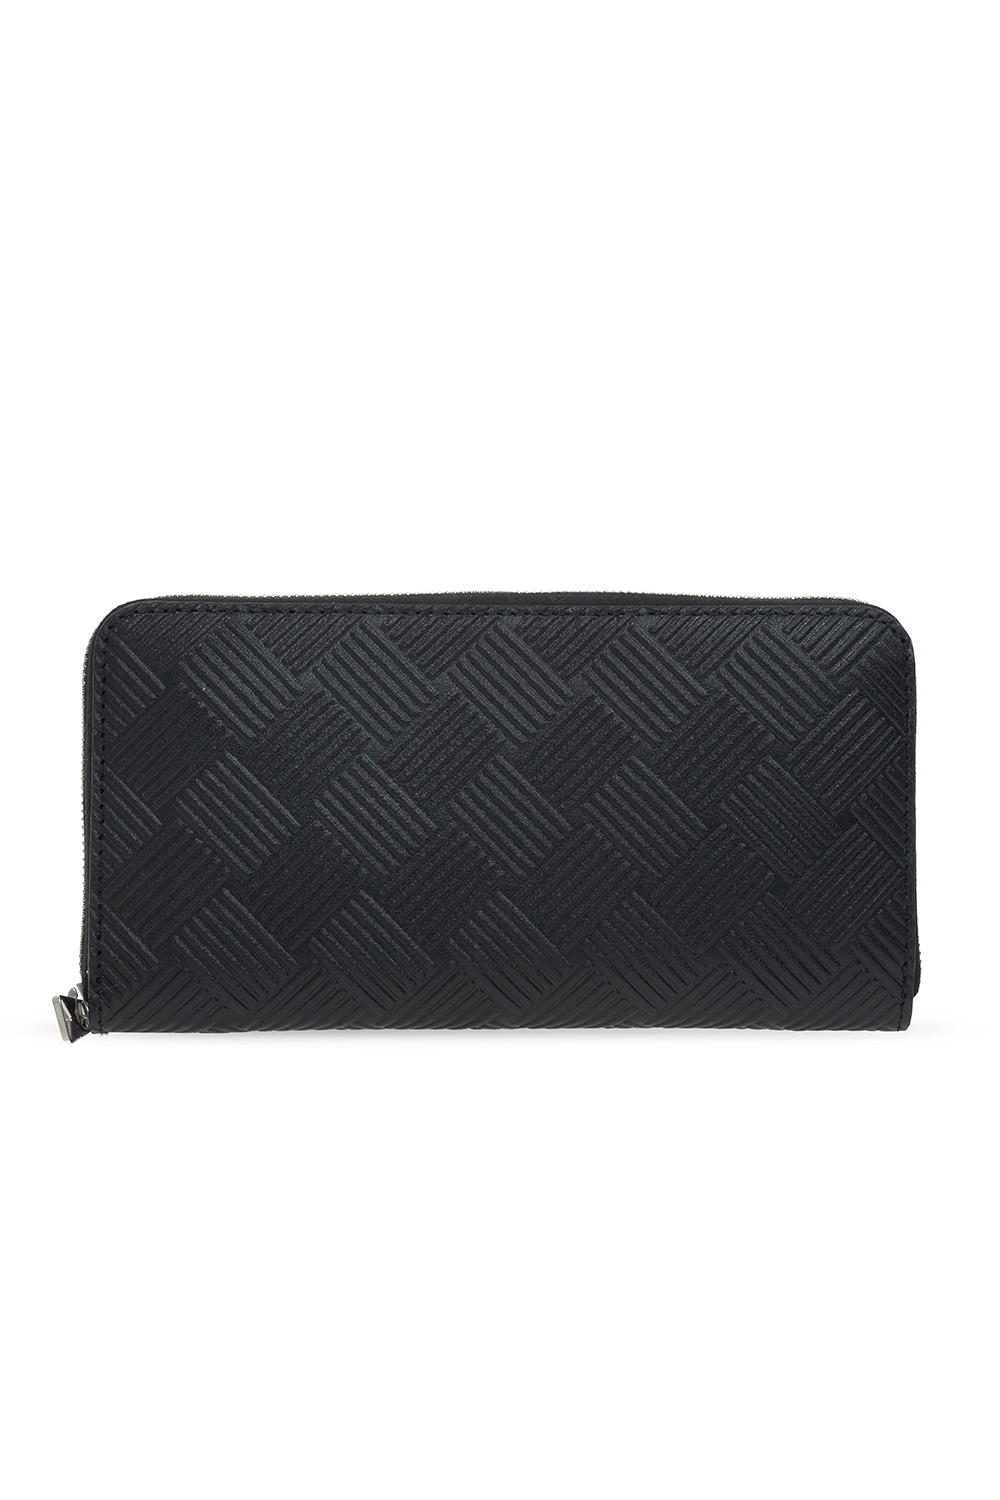 Bottega Veneta Leather wallet with logo